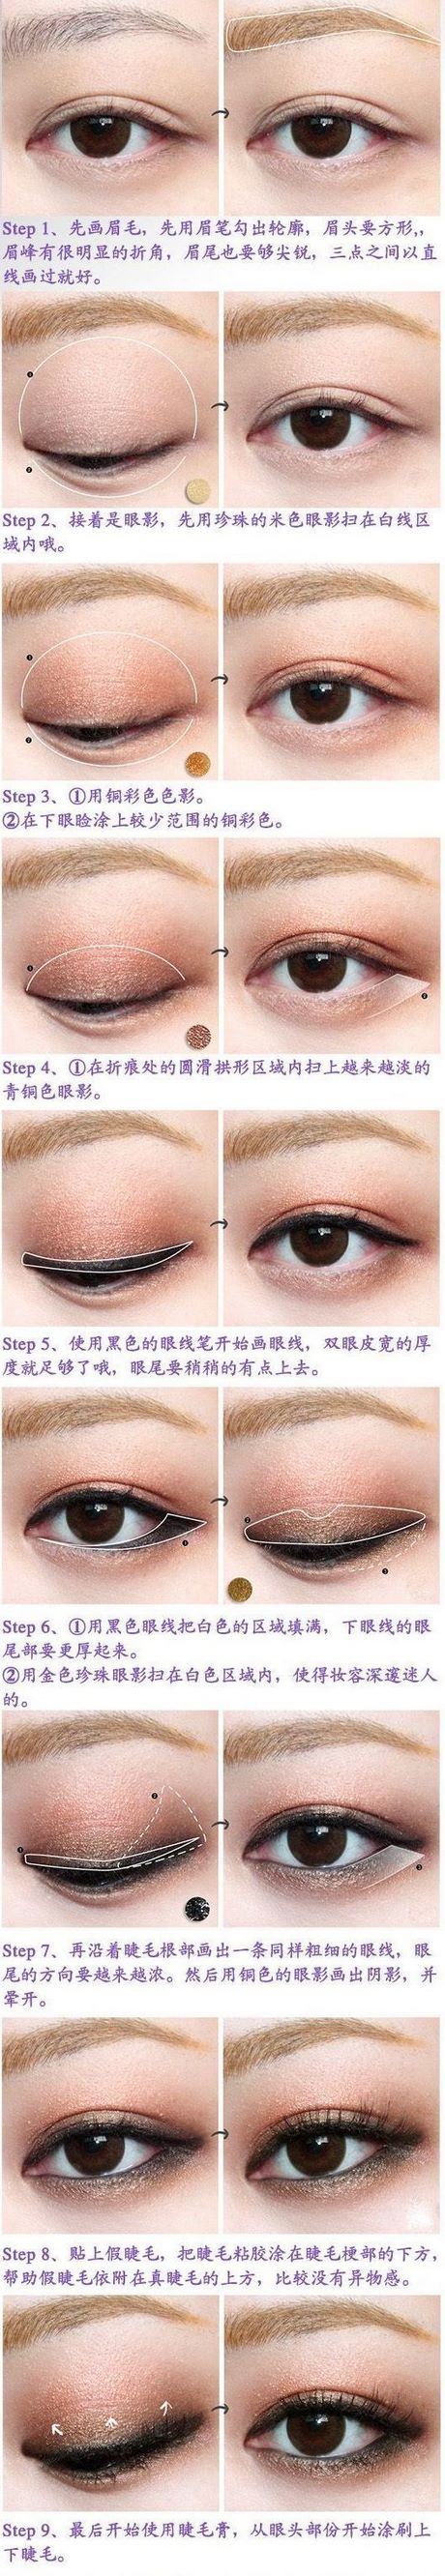 beauty-tutorials-makeup-46_6 Beauty tutorials make-up